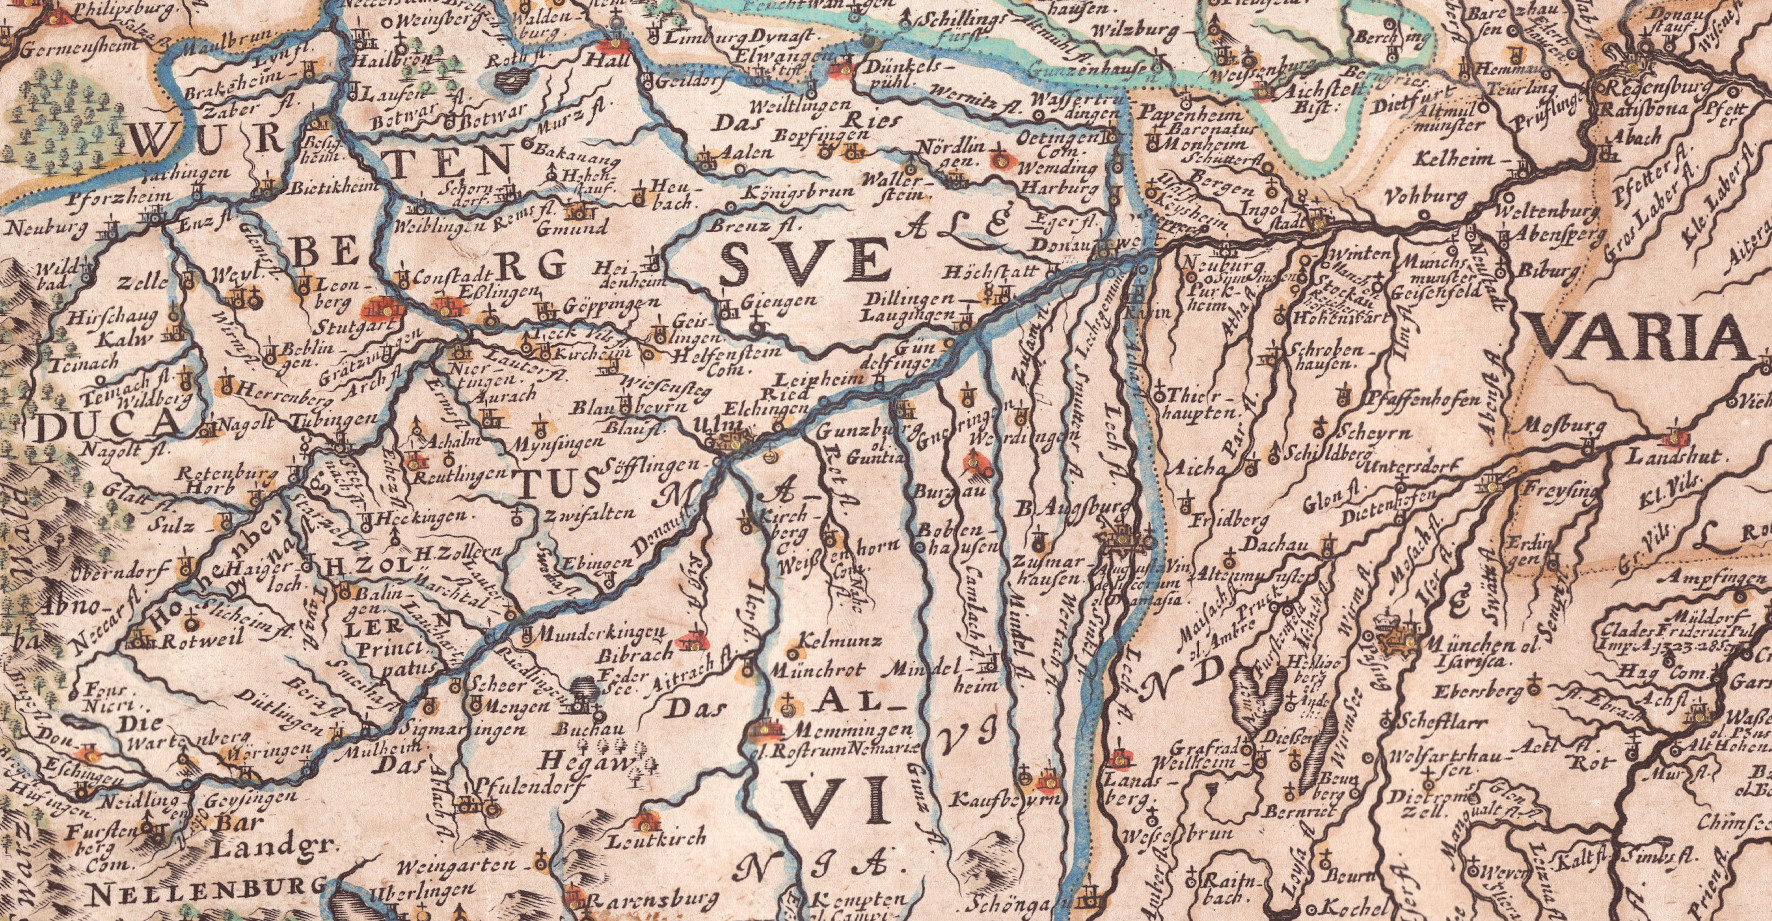 FFA_Donaueschingen_Kartensammlung_Sandrart 1683 - Kopie